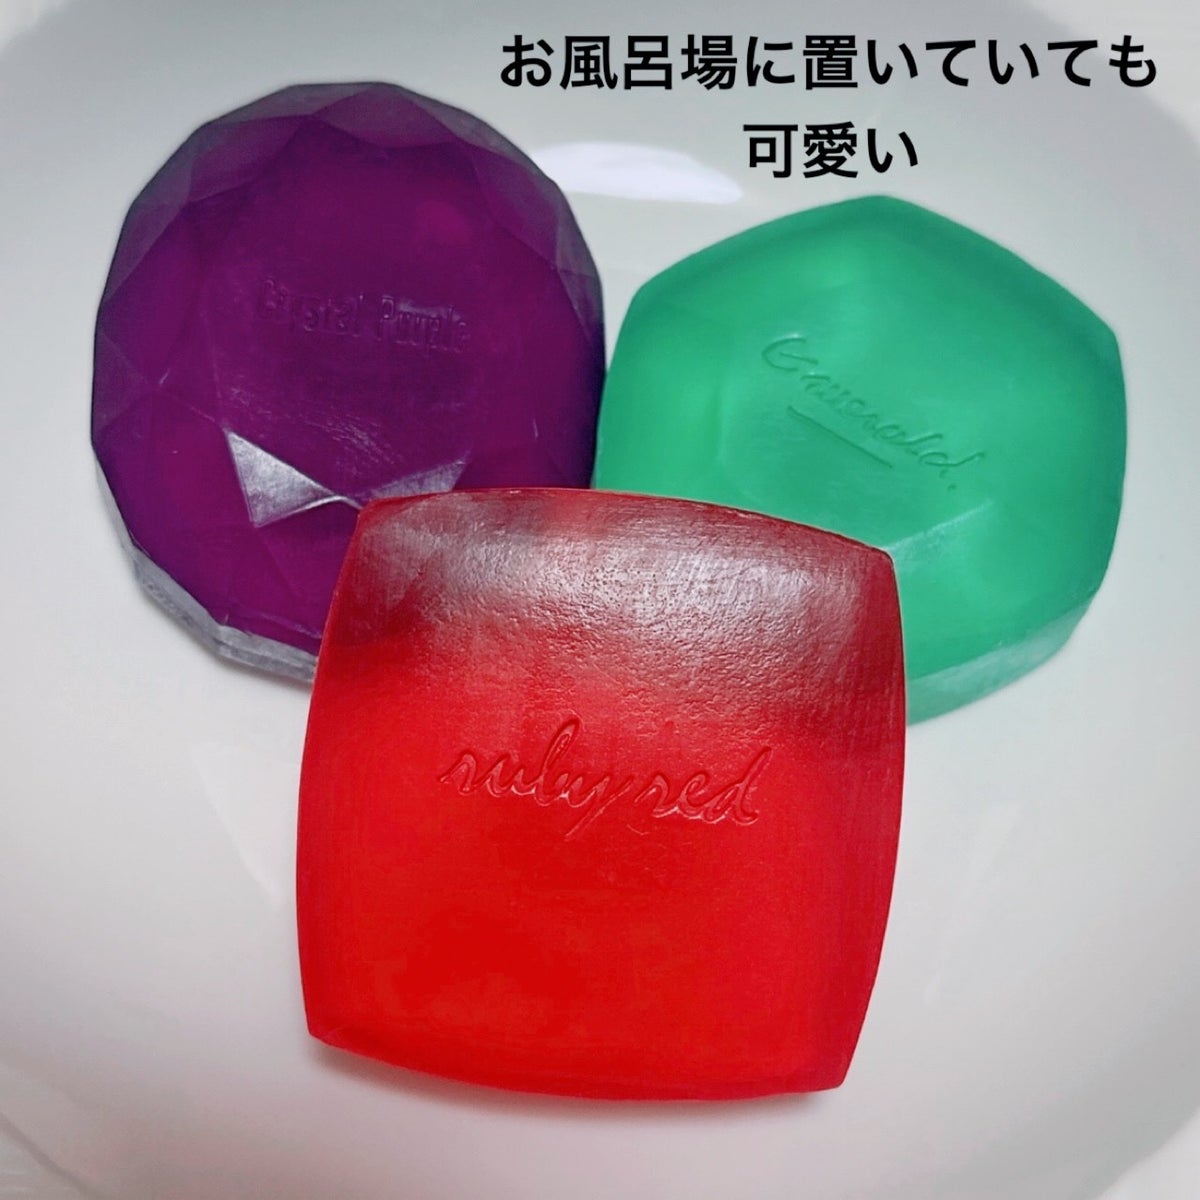 ホネケーキ(クリスタルパープル)/SHISEIDO/洗顔石鹸 by Hau（ハウ）美容Room